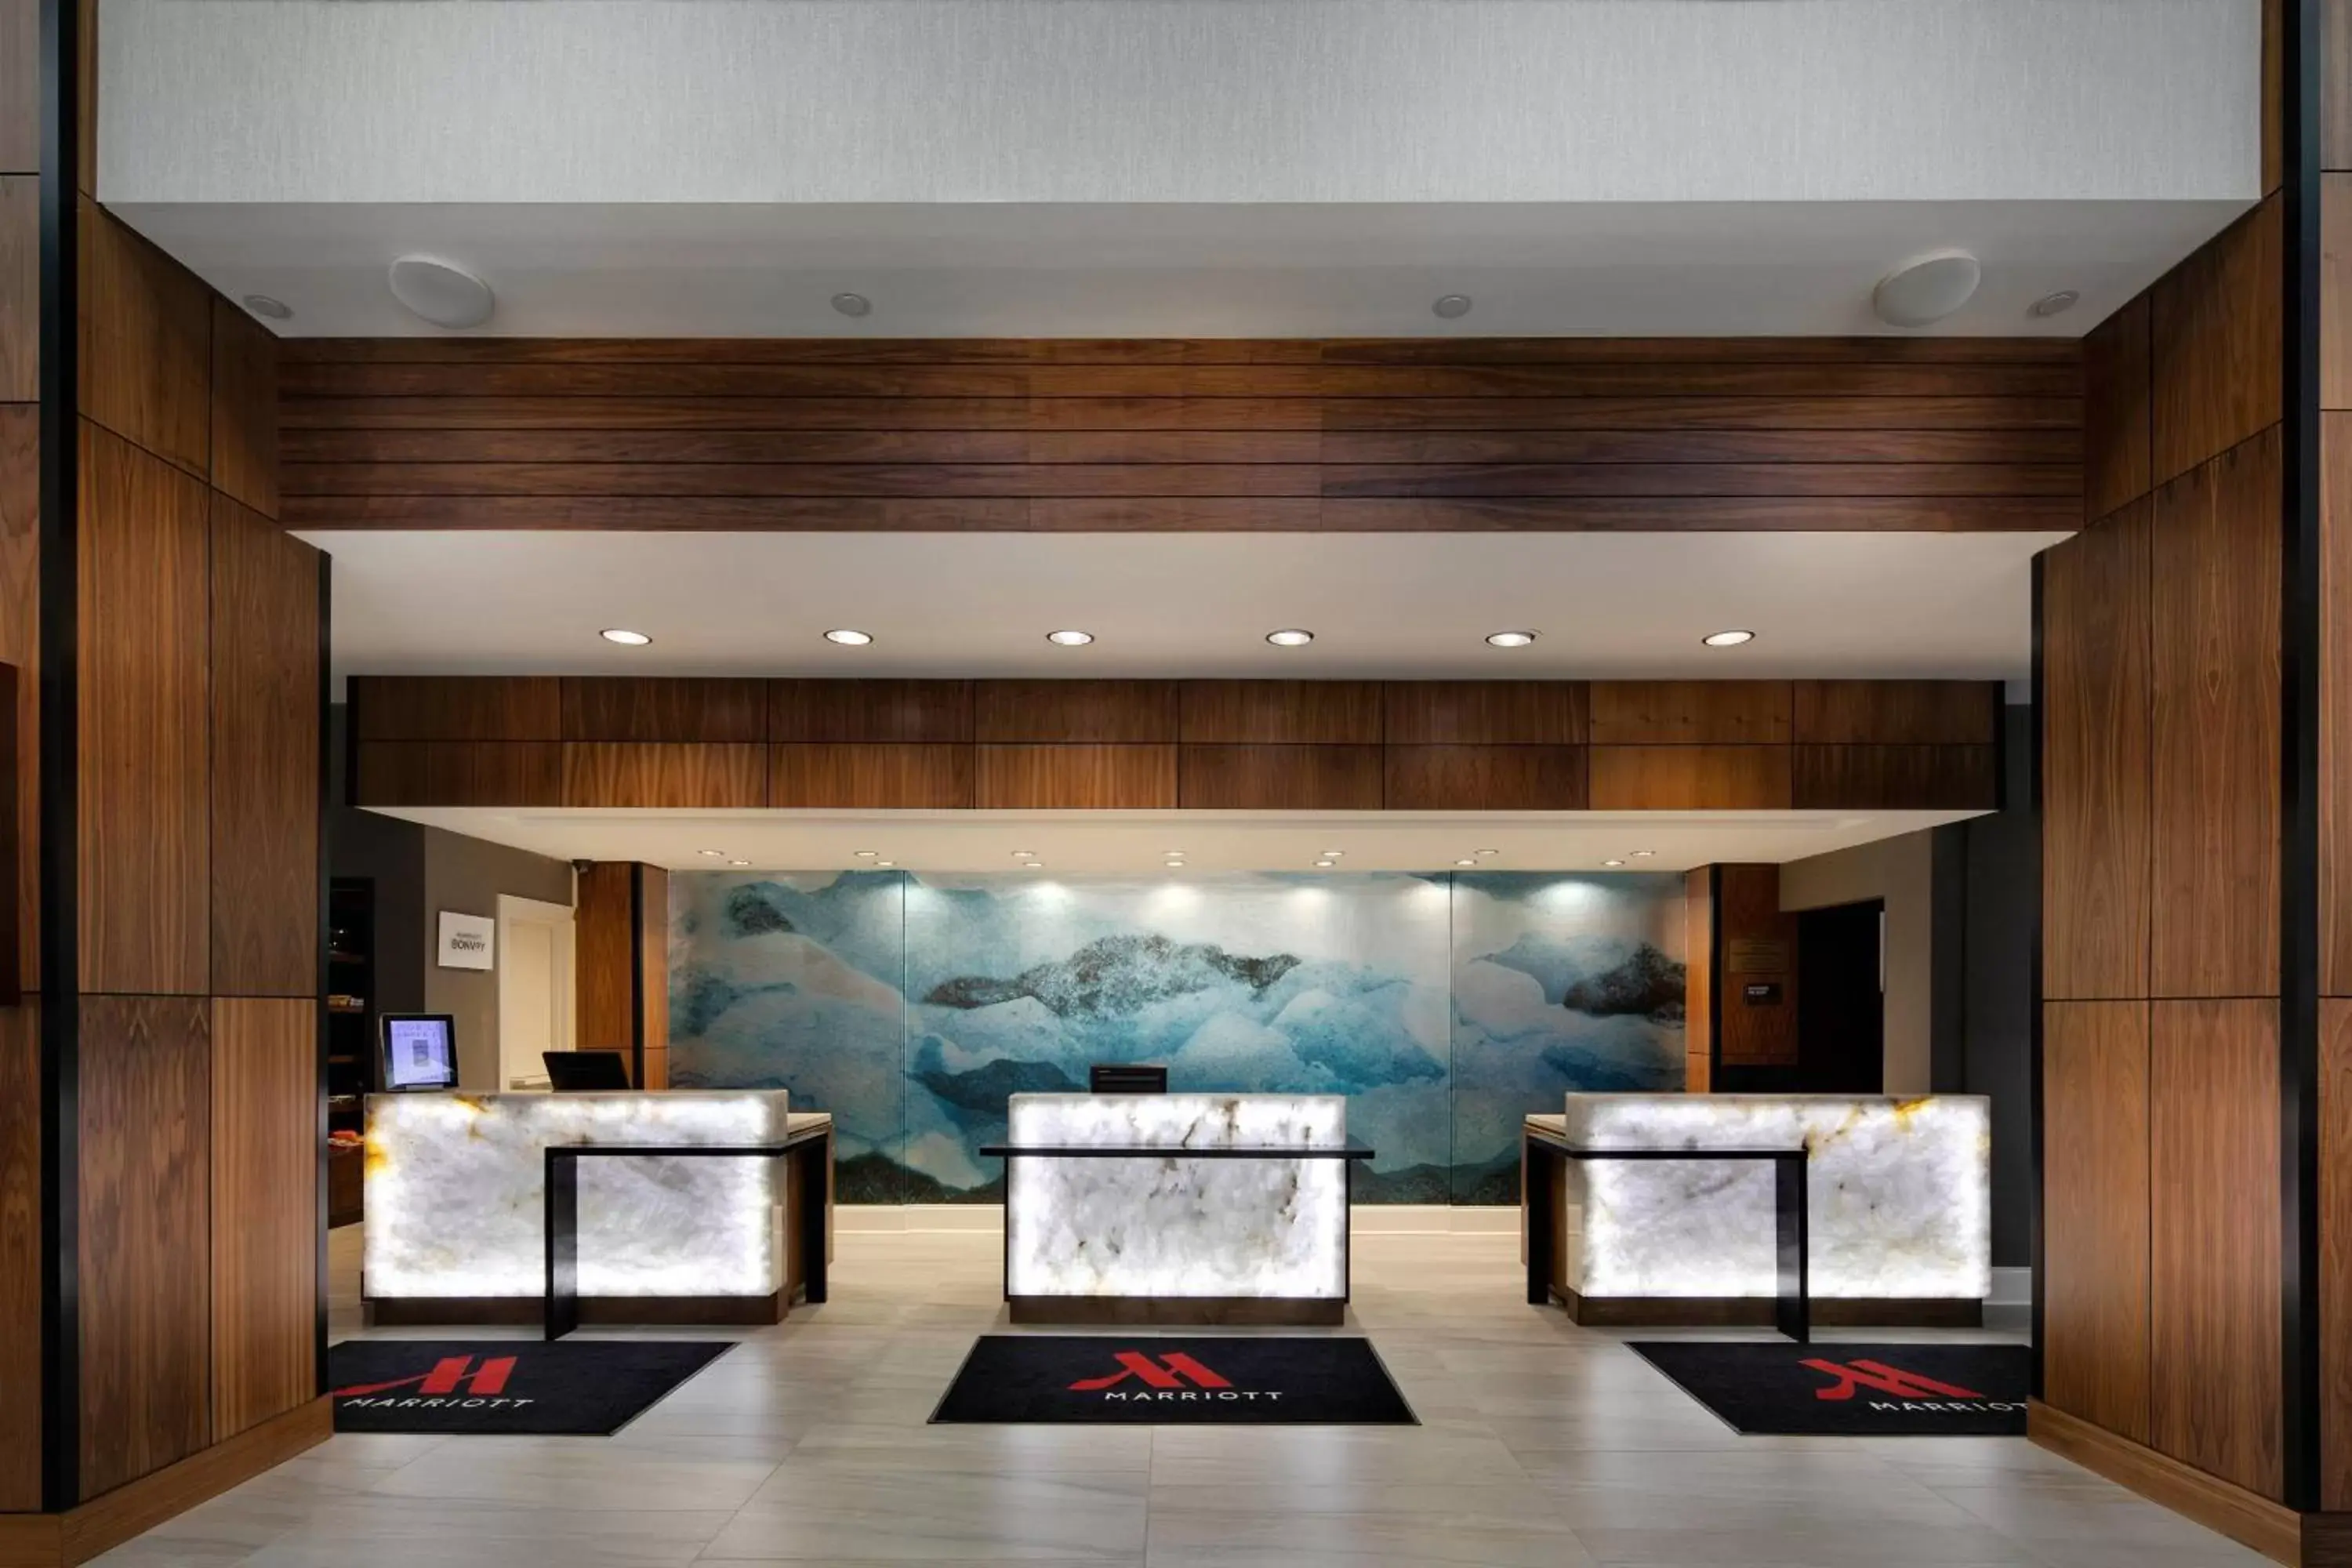 Lobby or reception in Winston-Salem Marriott